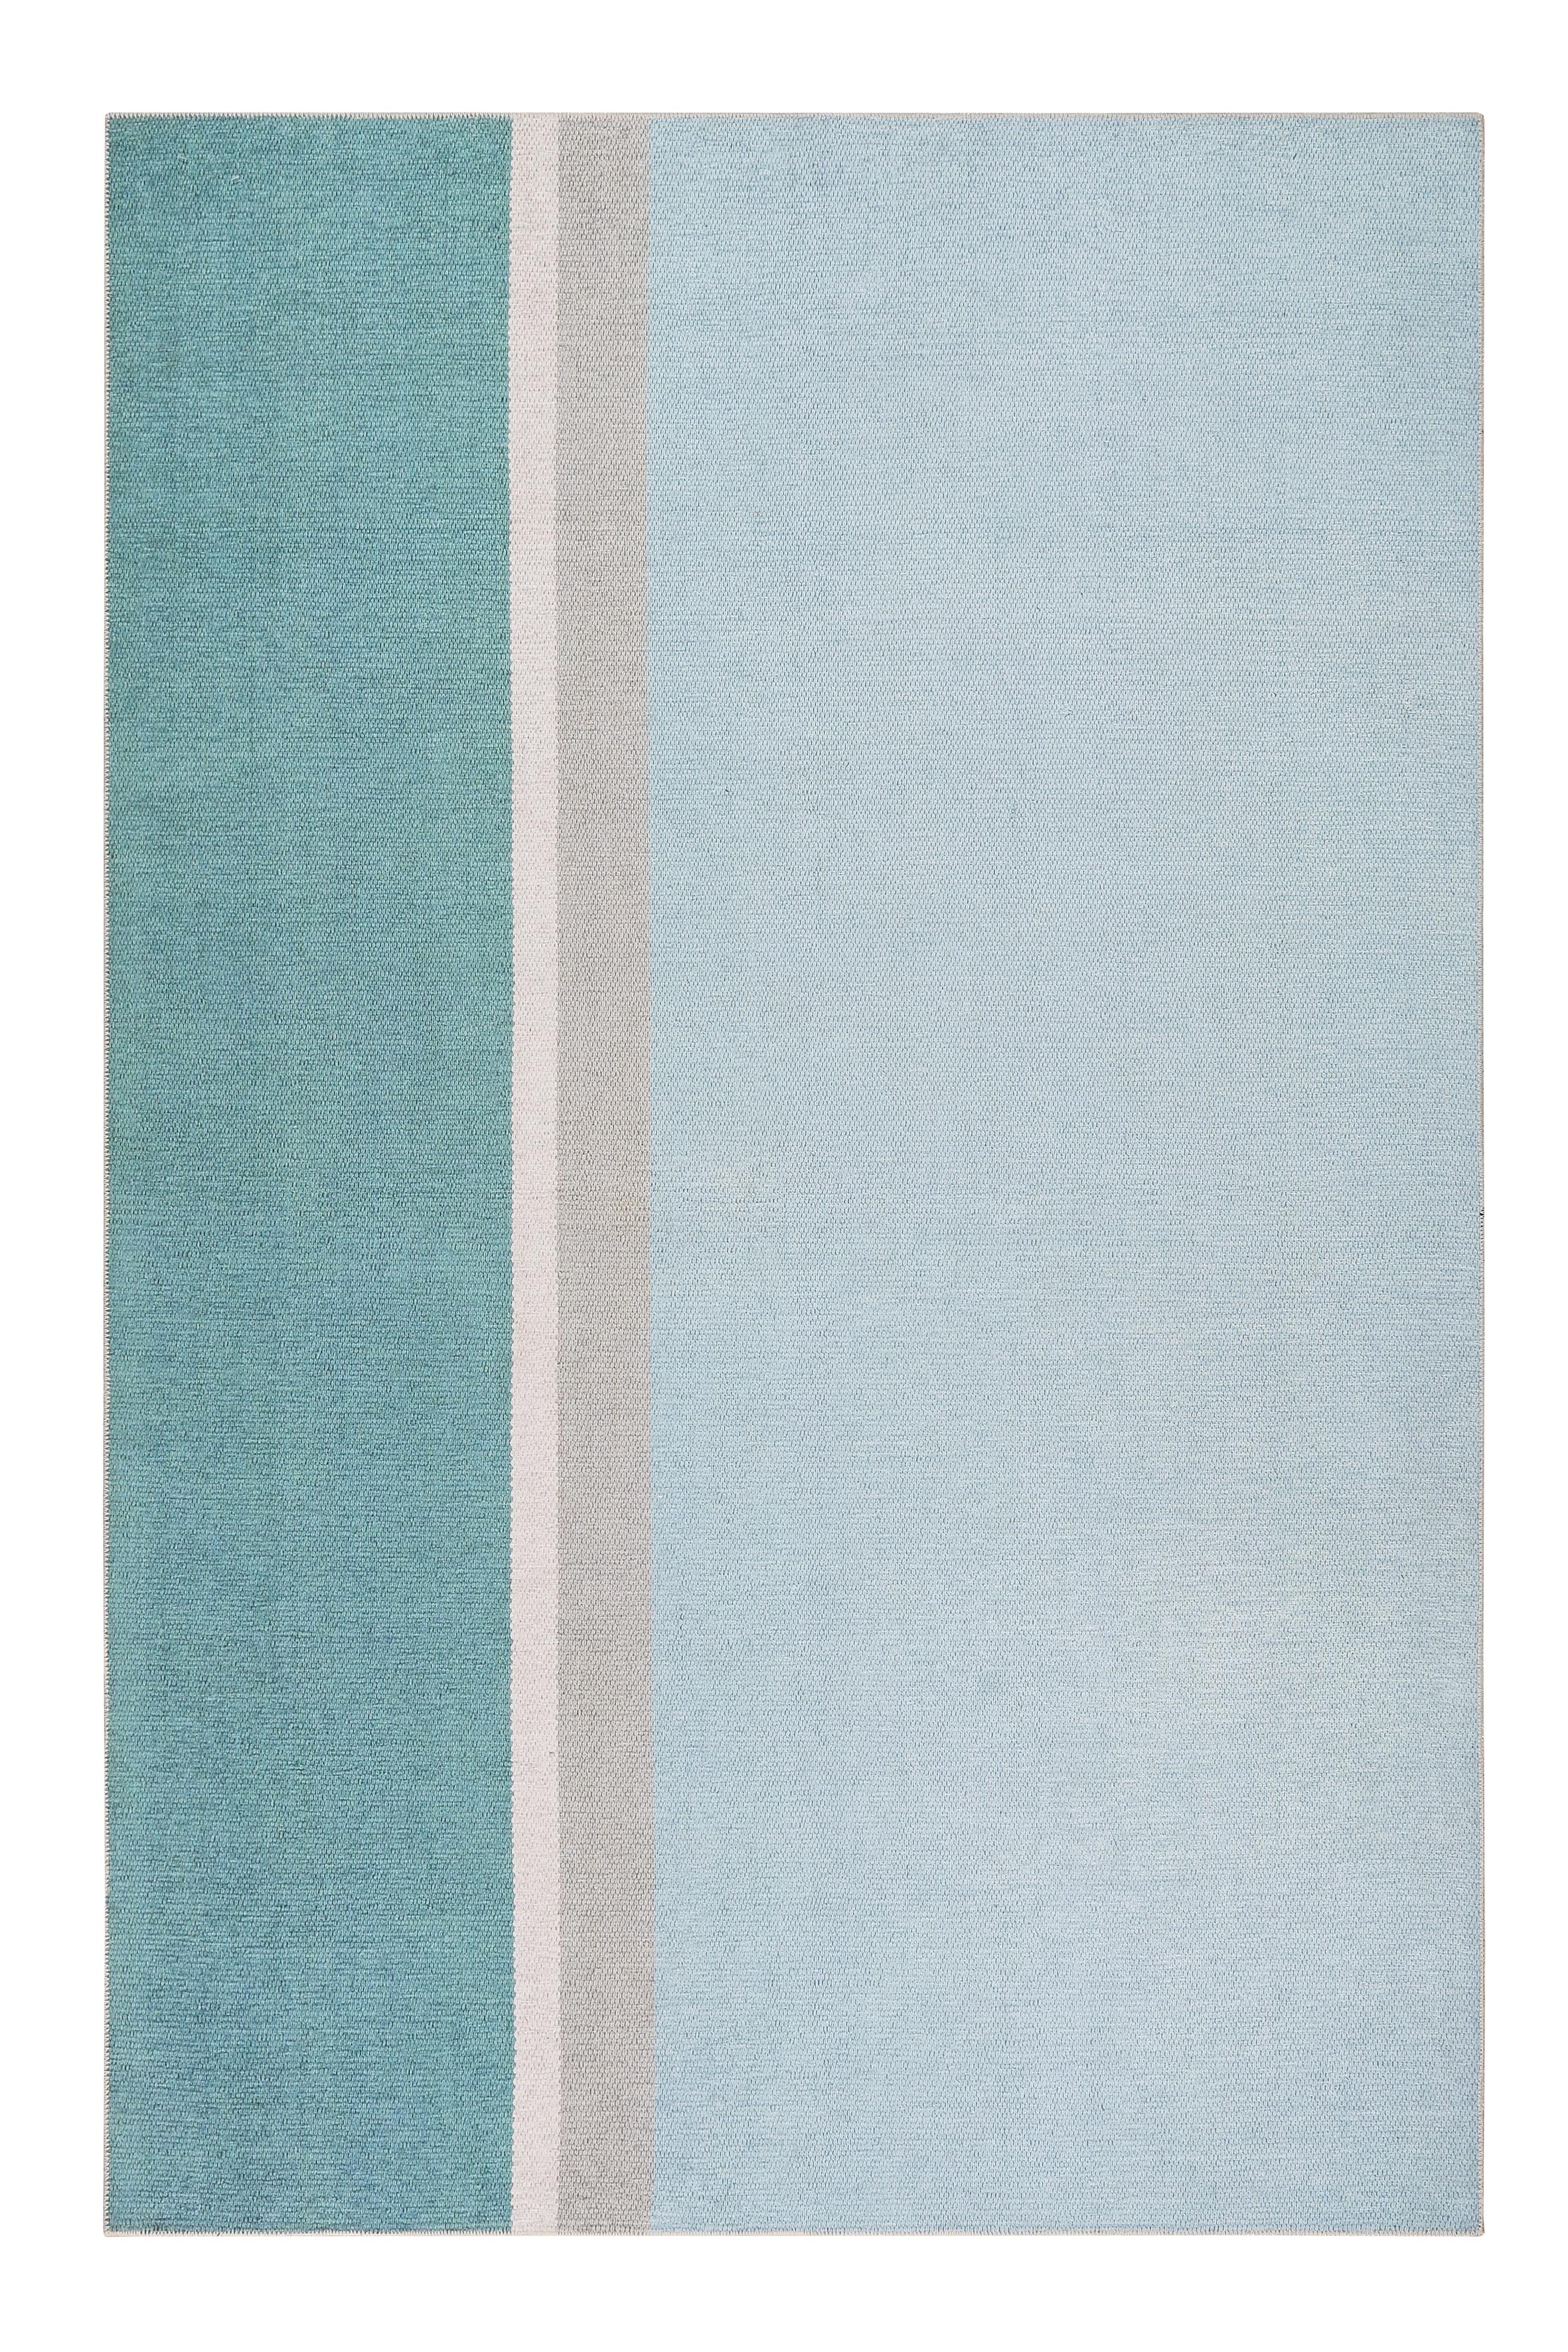 Flachwebeteppich Saltriver - Blau/Beige, KONVENTIONELL, Textil (60/100cm) - Esprit